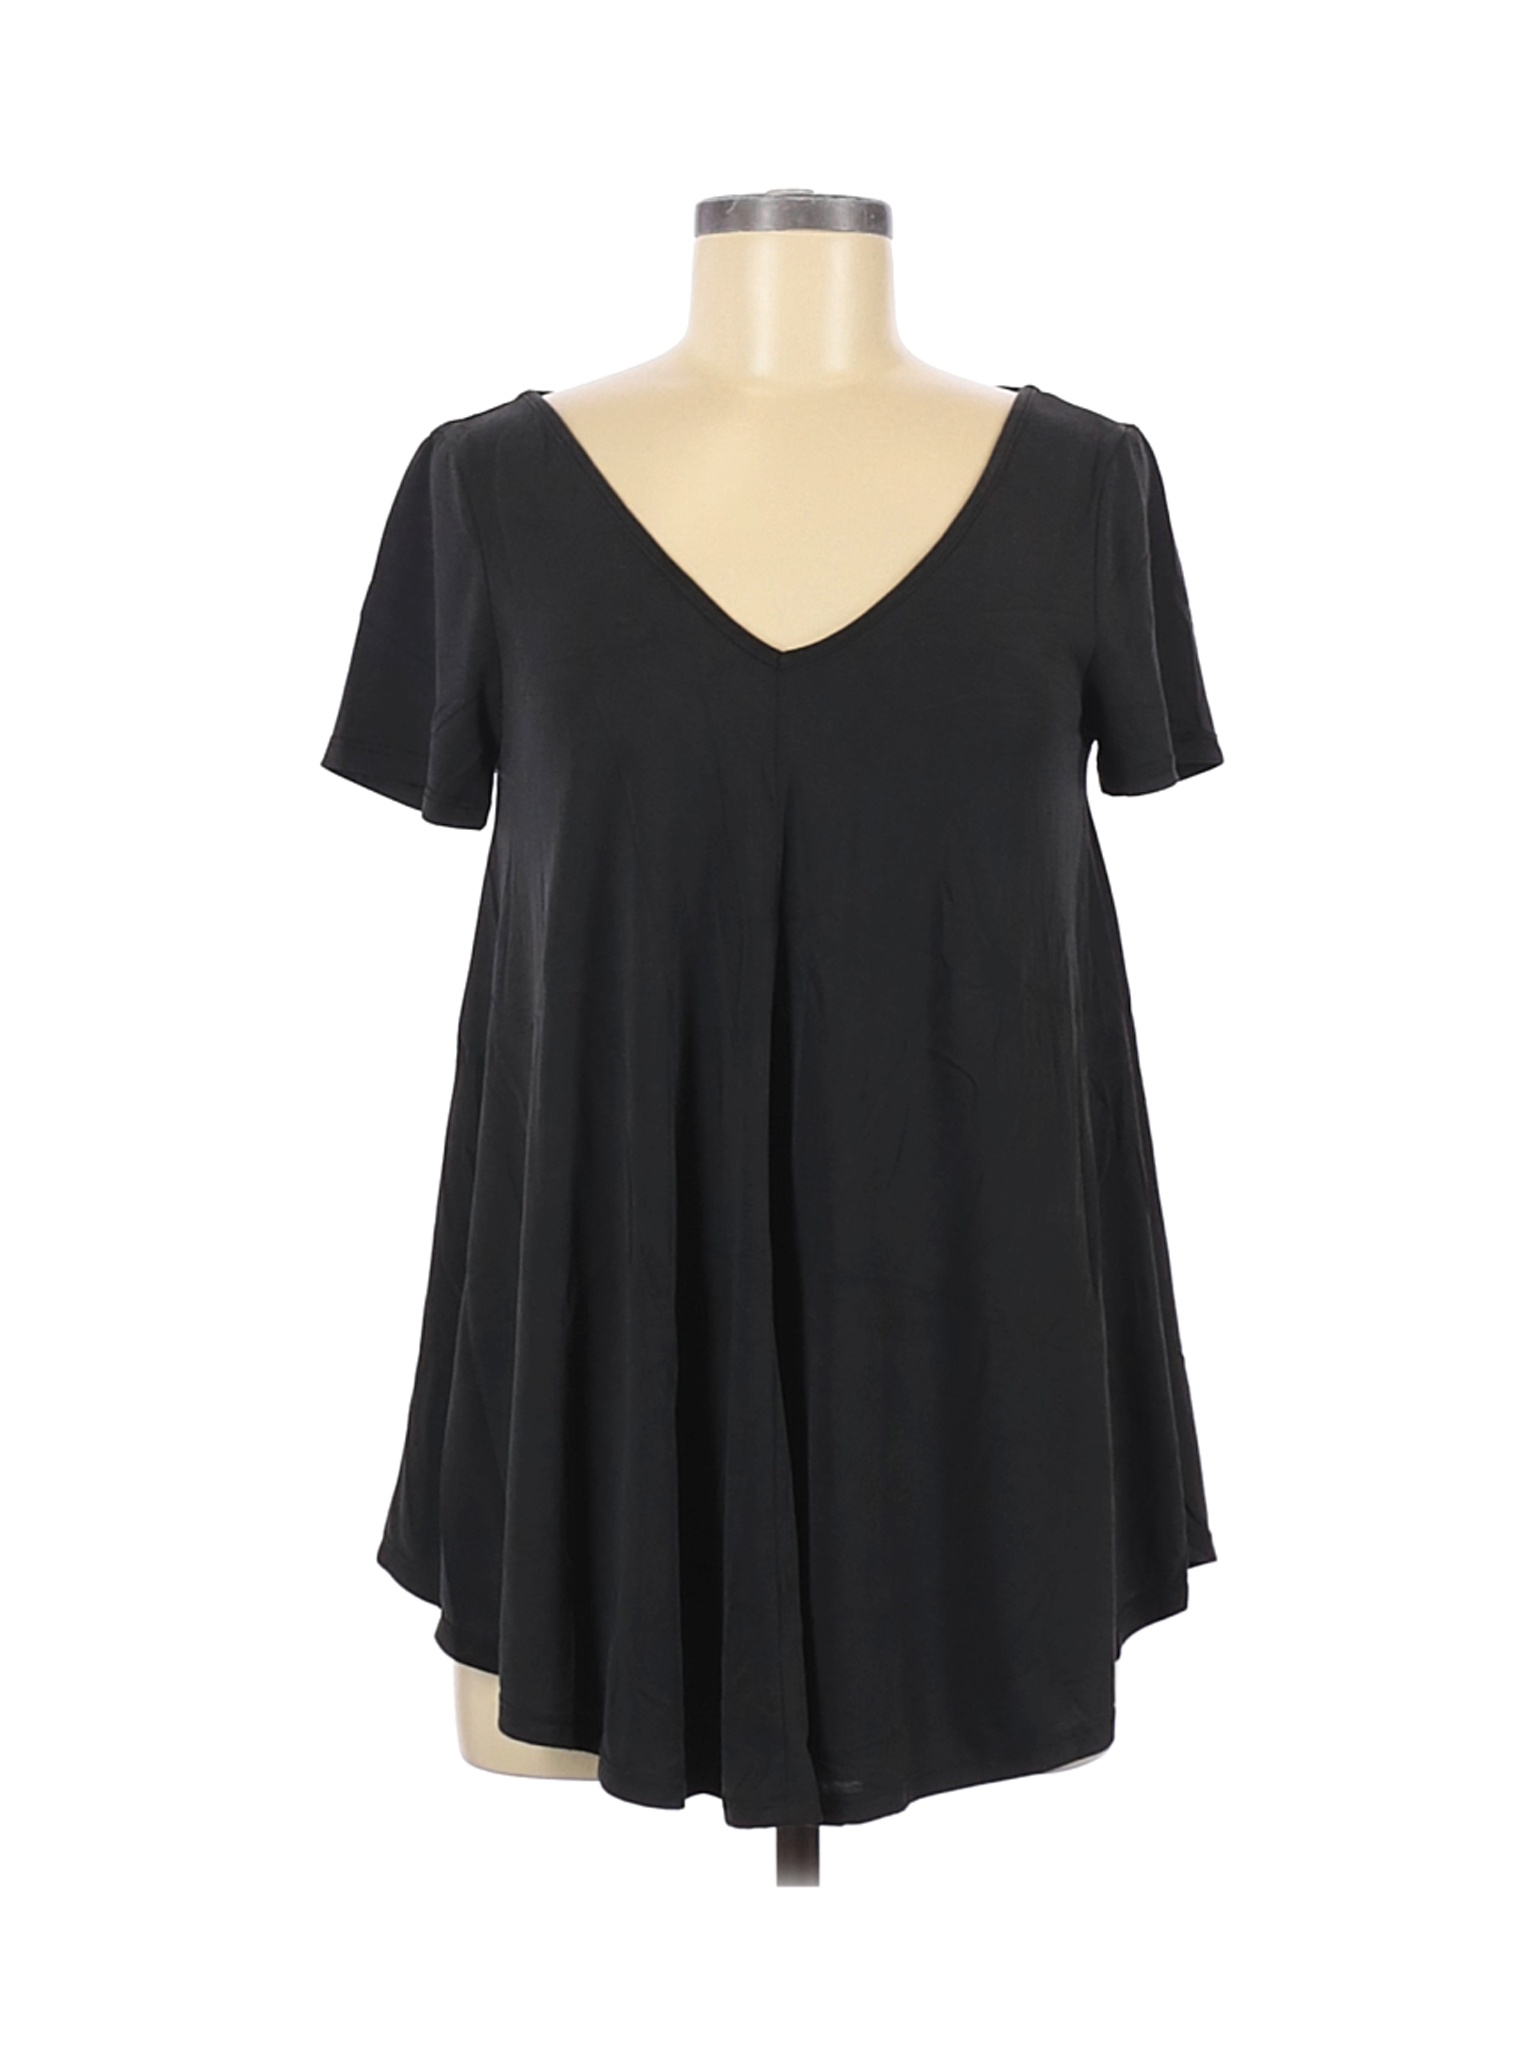 Green Envelope Women Black Short Sleeve Top S | eBay